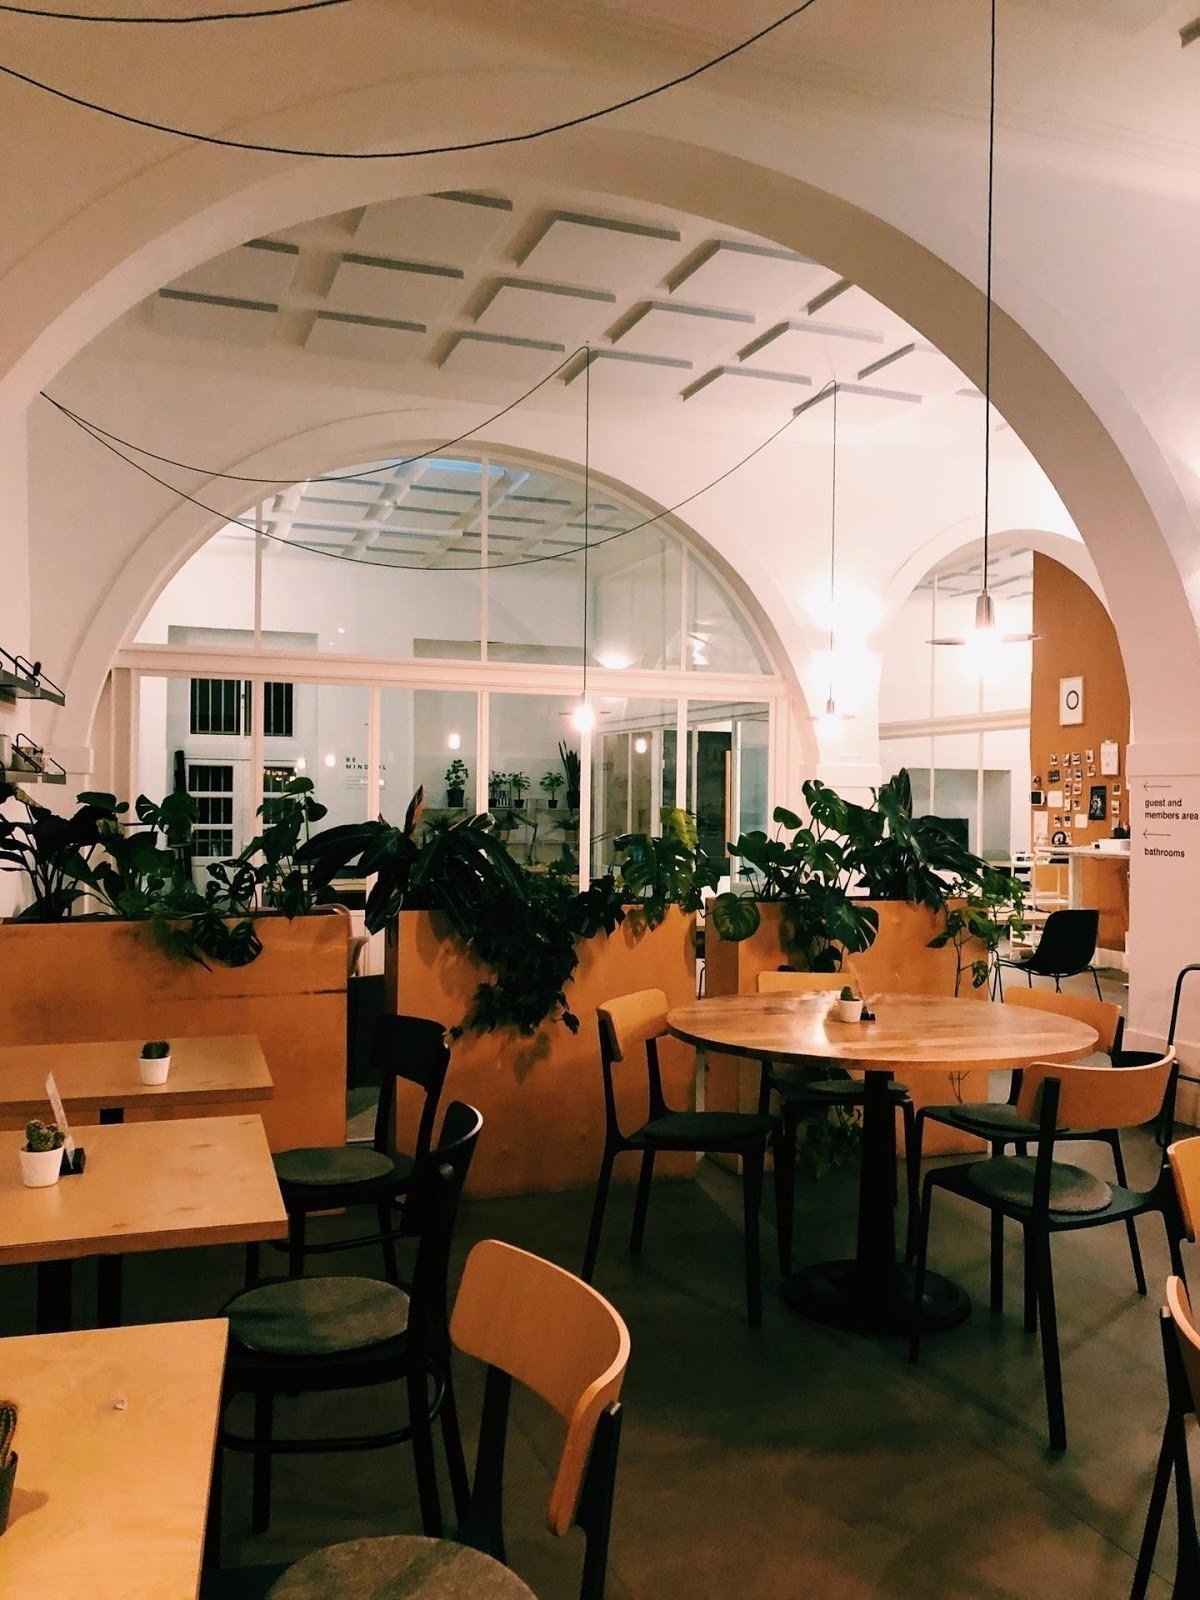 Outsite Cowork Café: A Work-Friendly Place in Lisbon